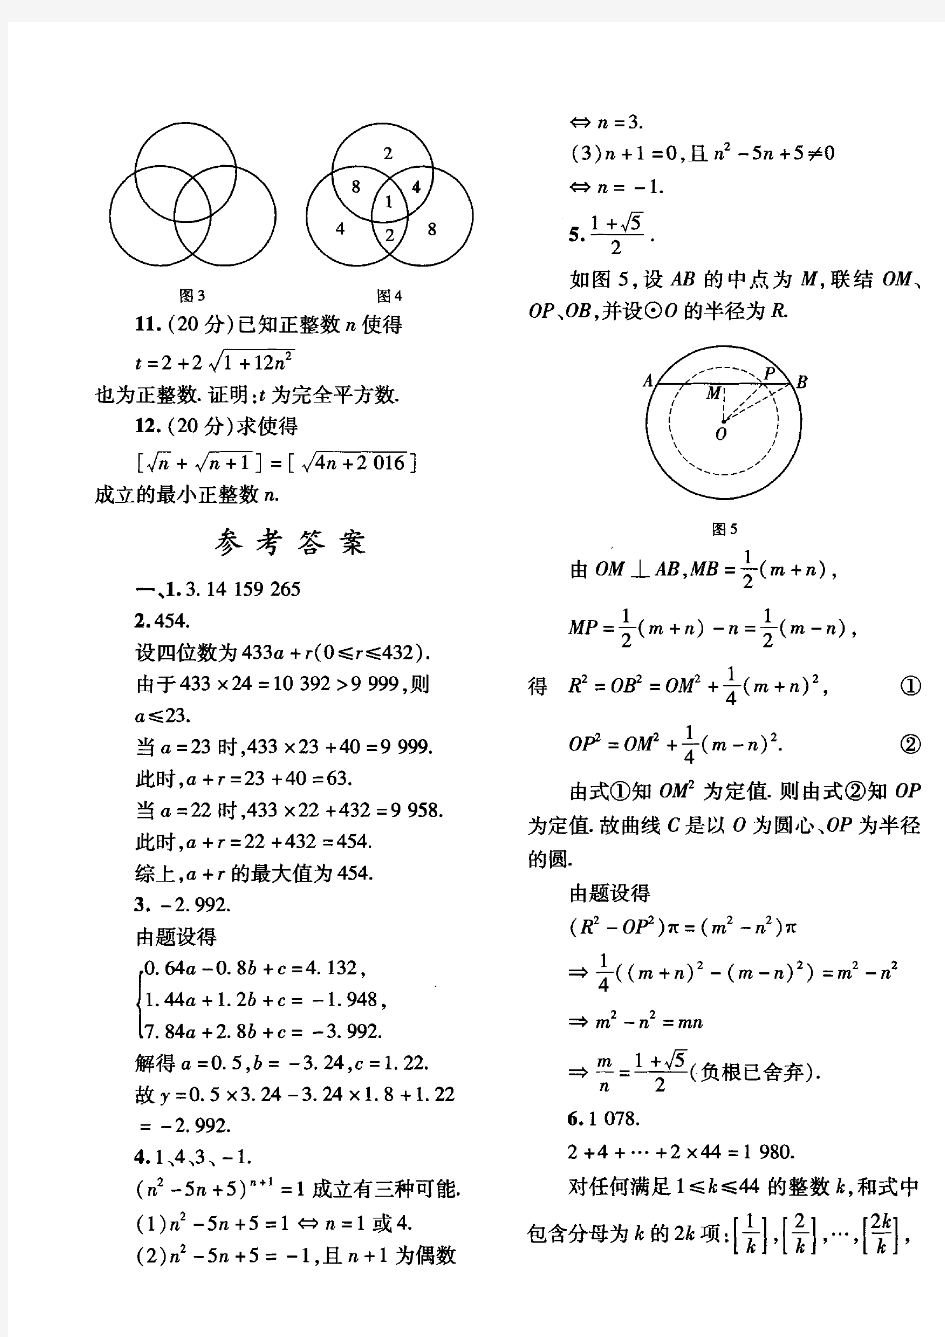 2016年上海市初三数学竞赛(大同中学杯)决赛试题与解答